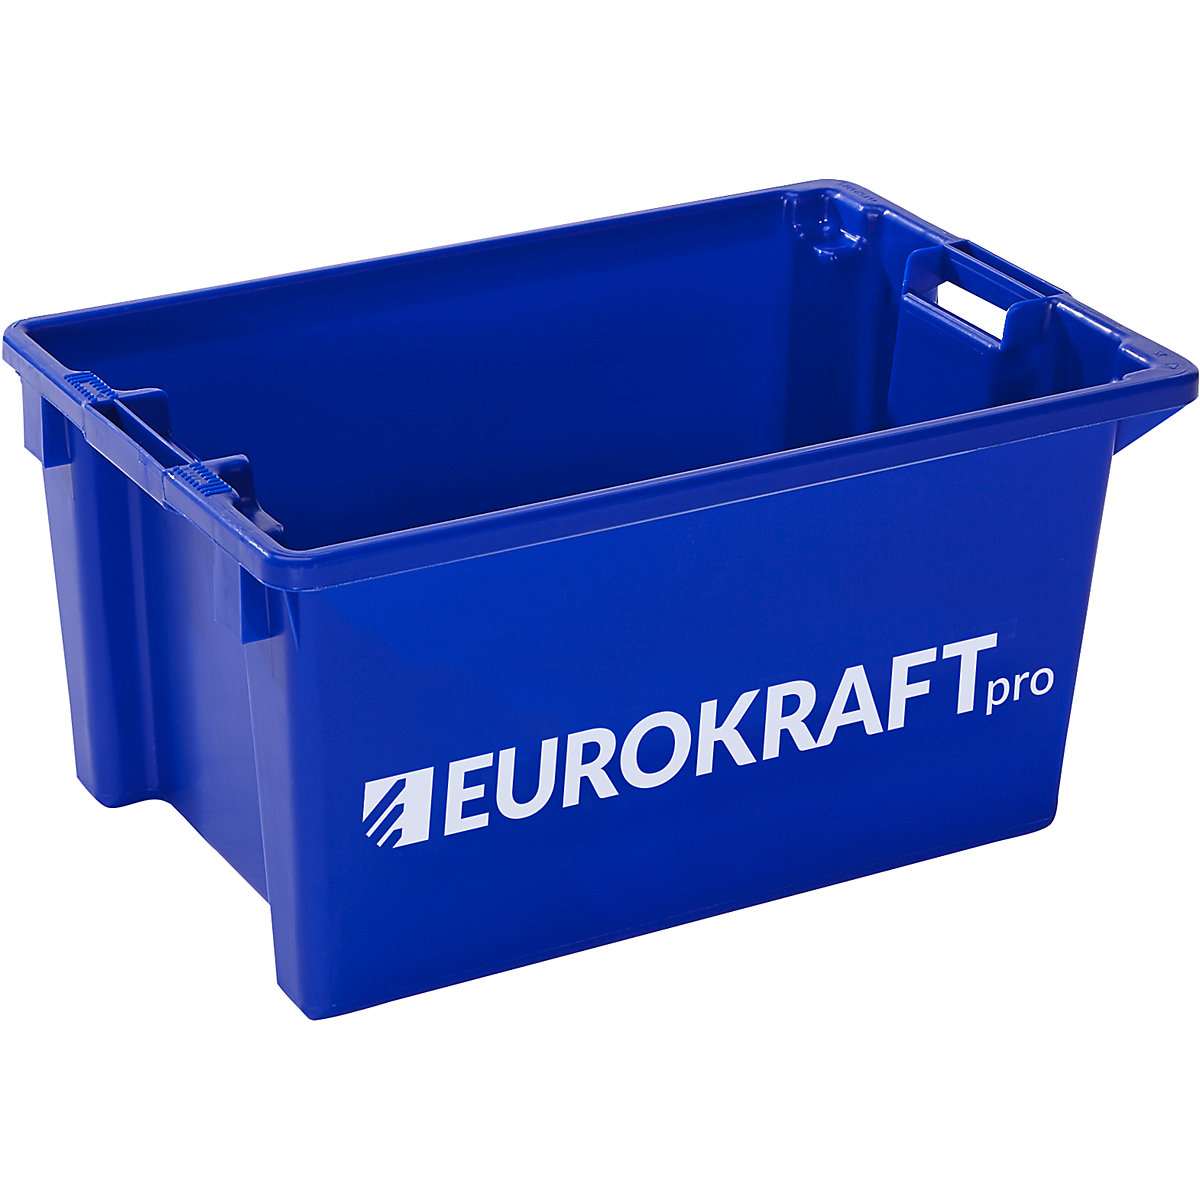 EUROKRAFTpro – Contenitori impilabili e girevoli, volume 50 l, conf. da 3 pezzi, blu